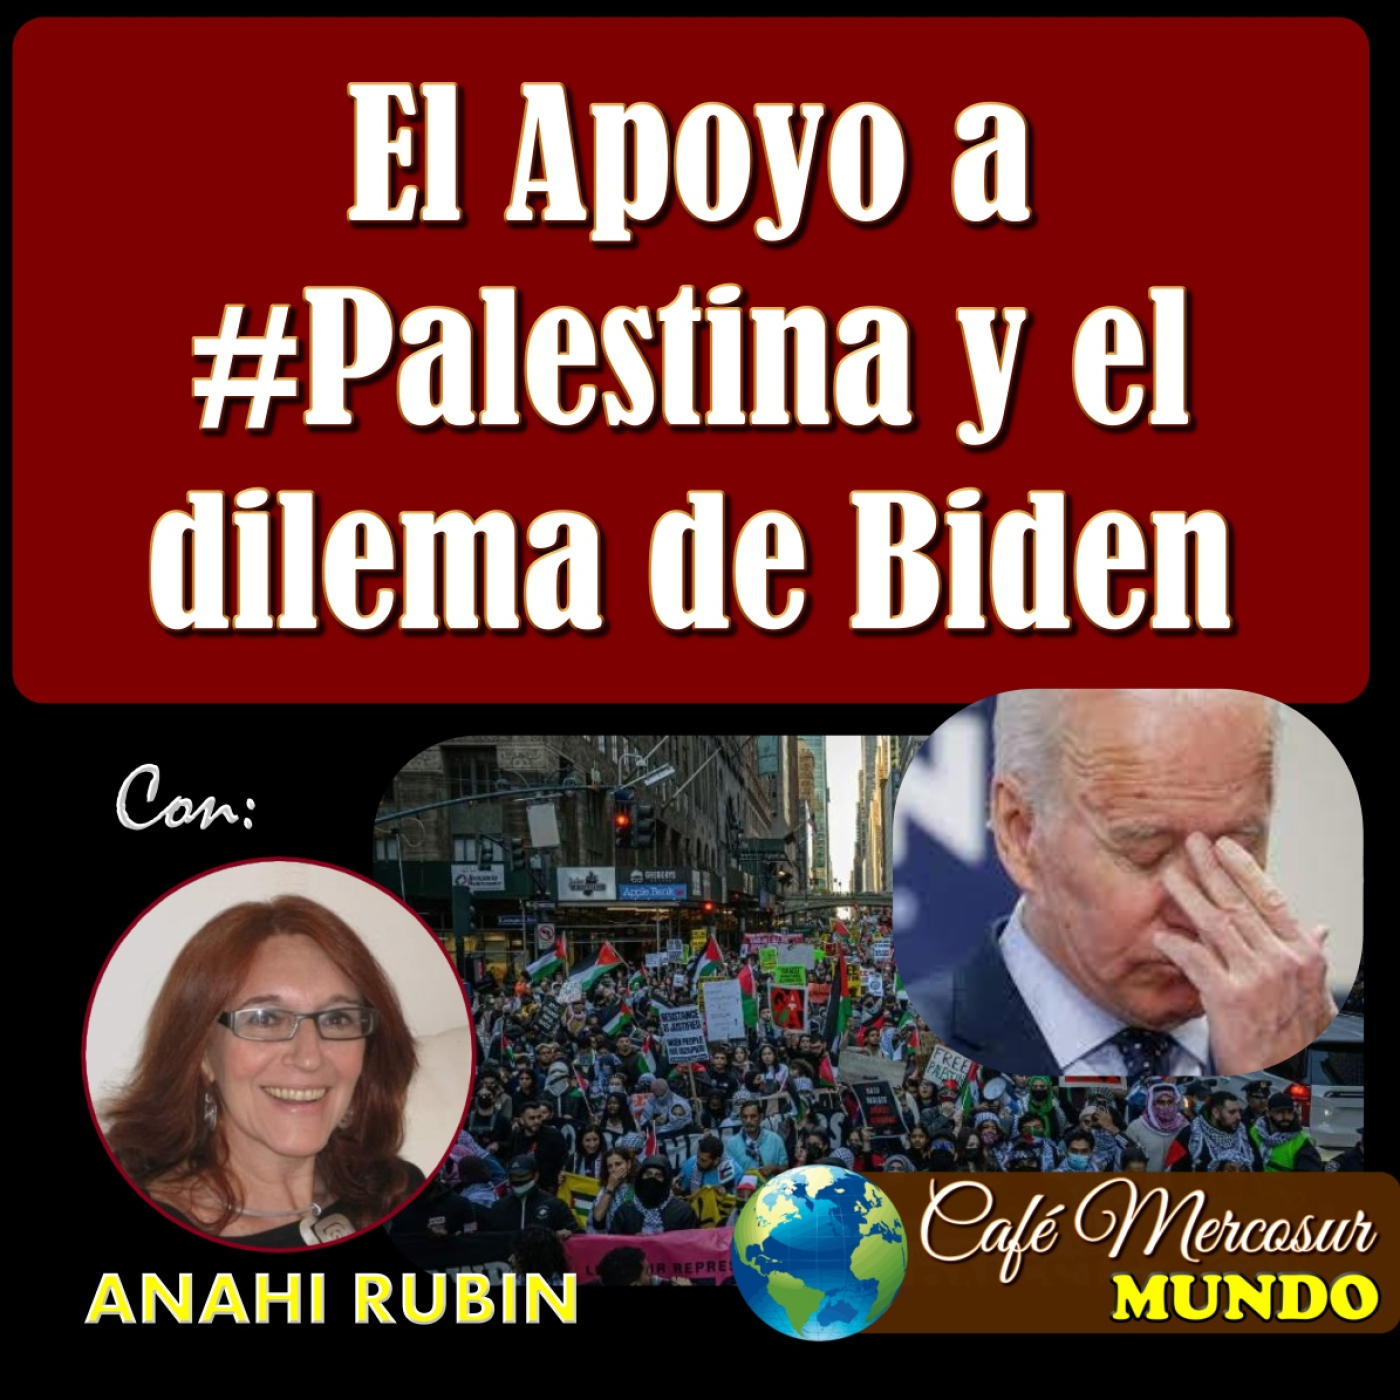 MUNDO: apoyo a Palestina y el dilema de Biden